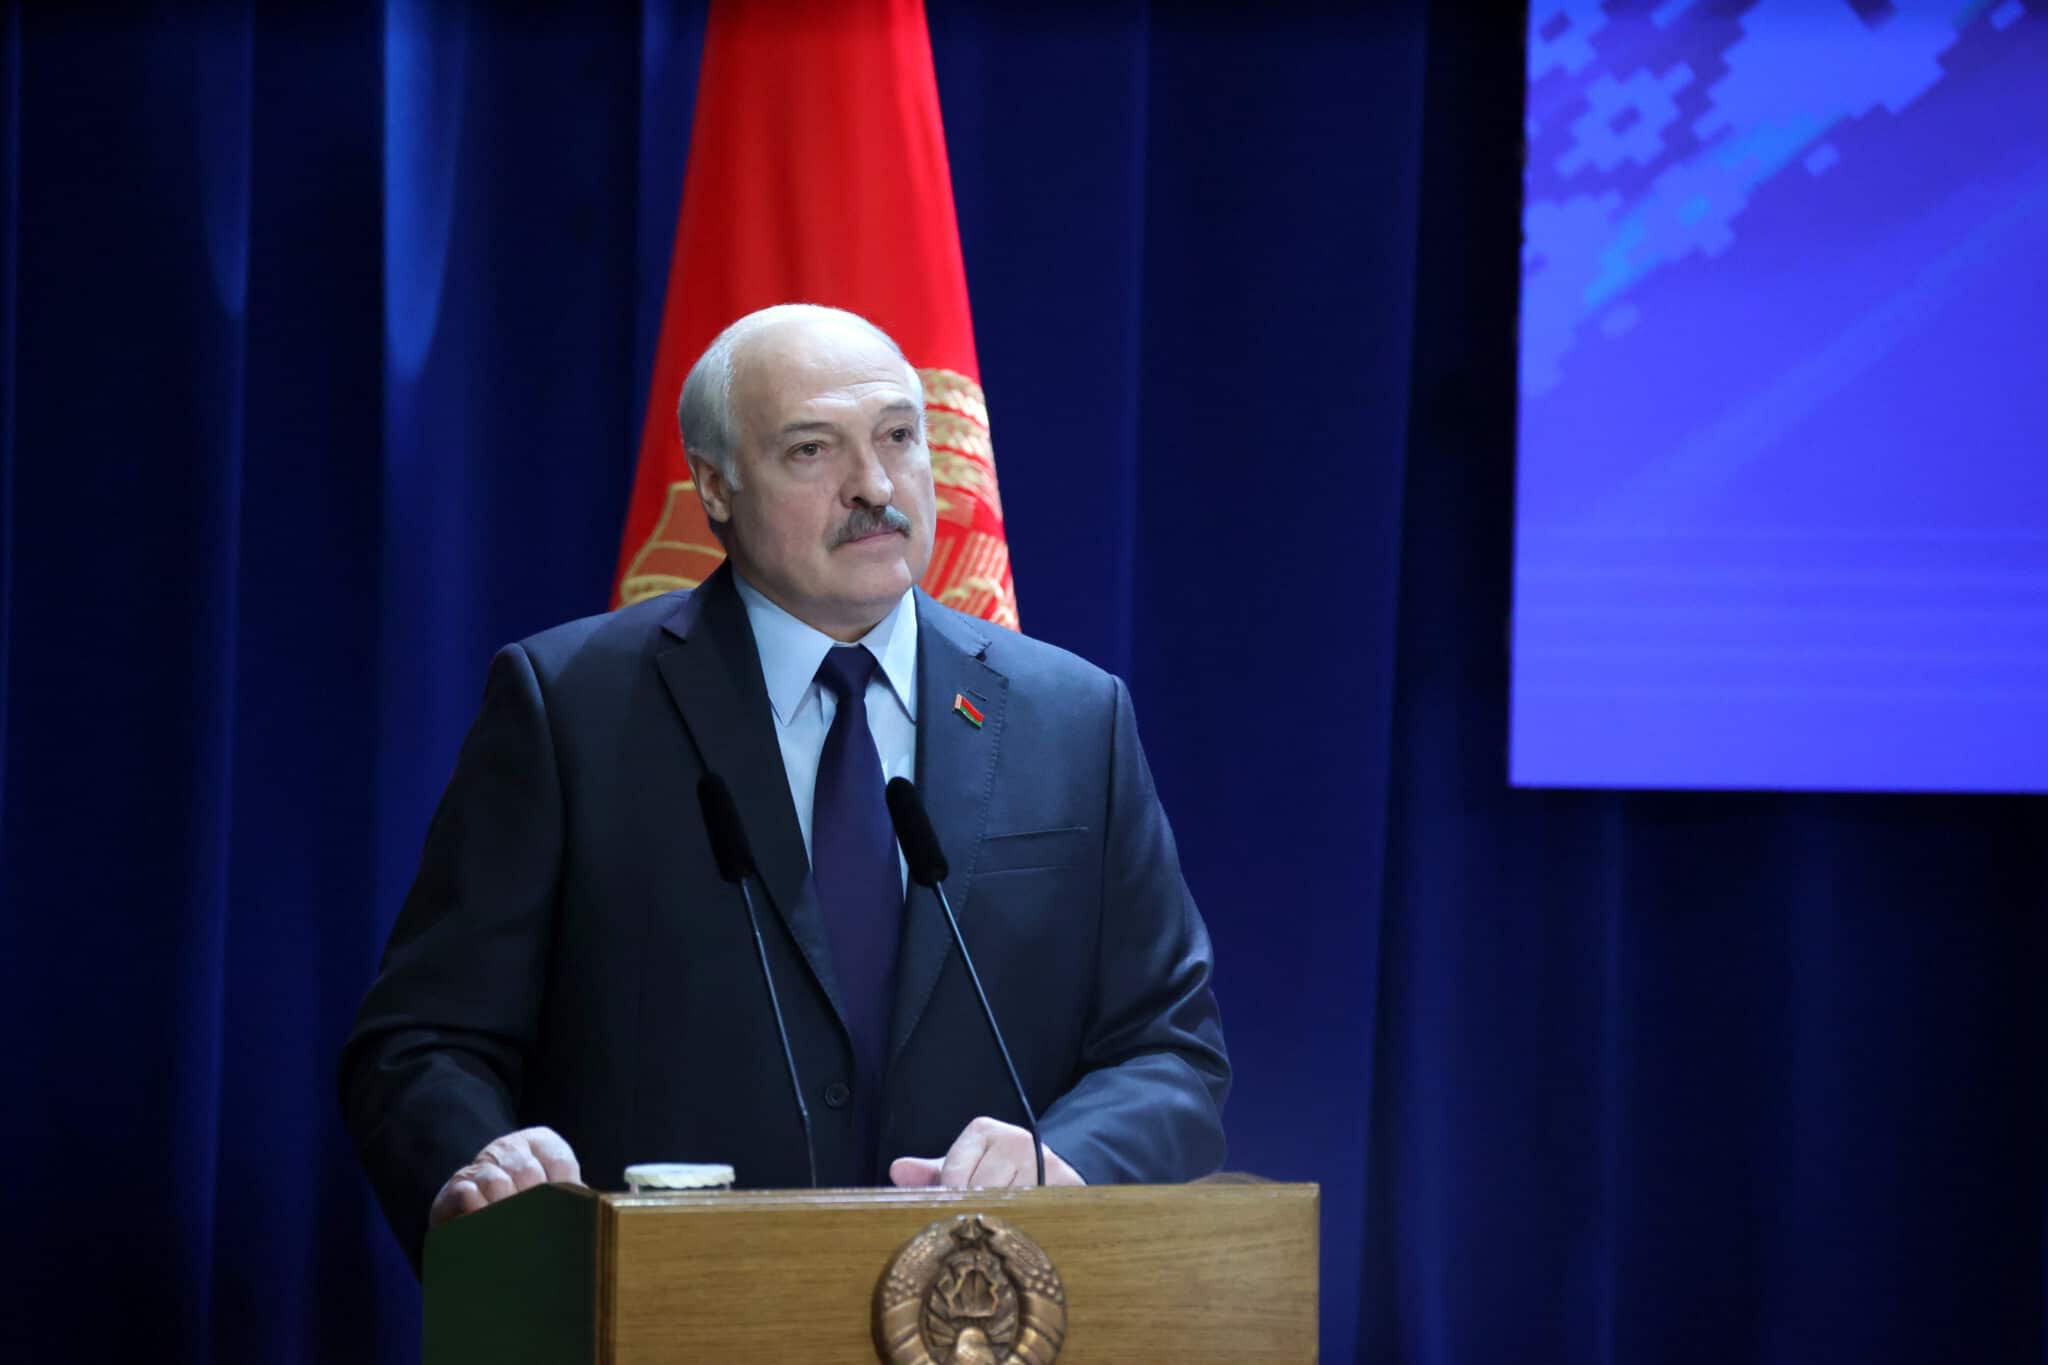 Президентът на Беларус Александър Лукашенко заяви че страната му е